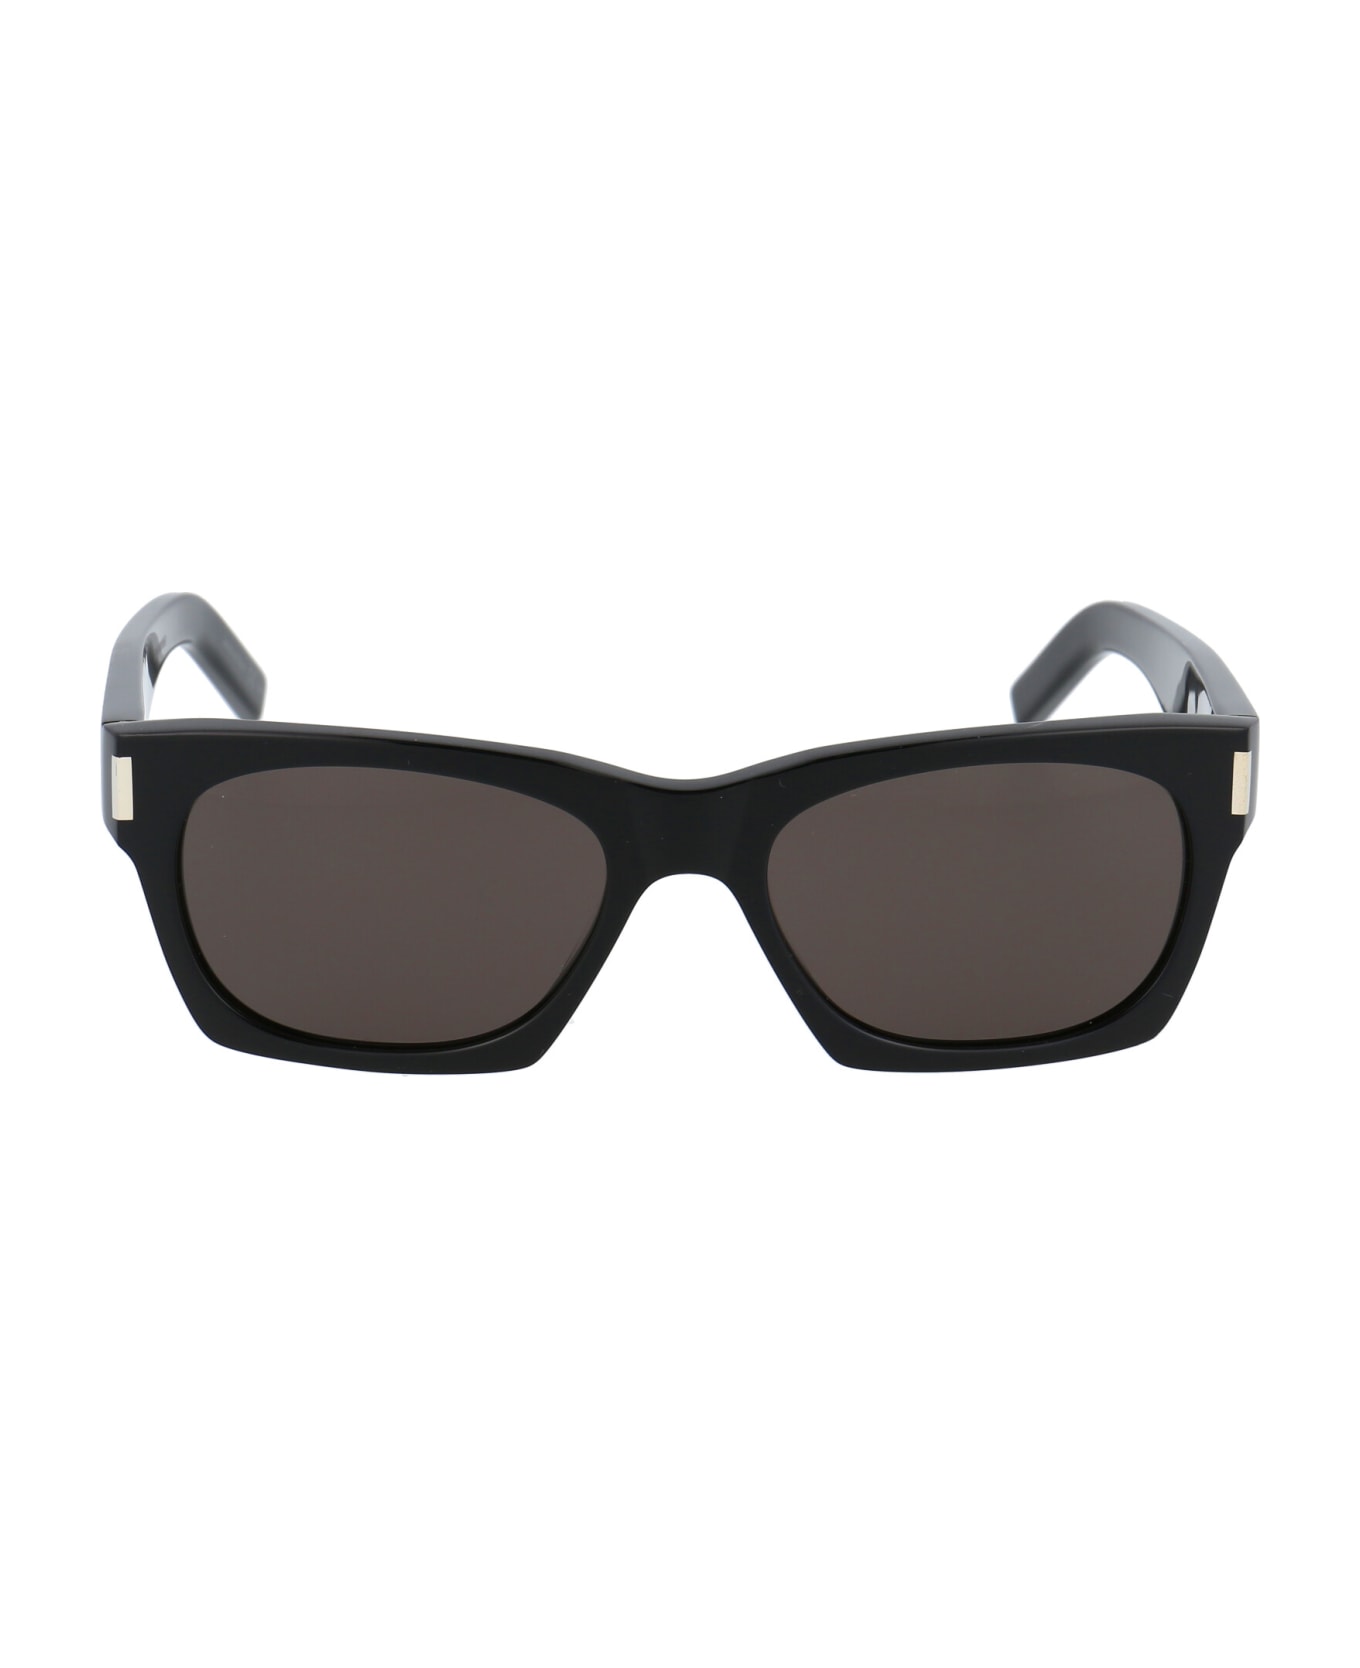 Saint Laurent Eyewear Sl 402 Sunglasses - 001 BLACK BLACK BLACK